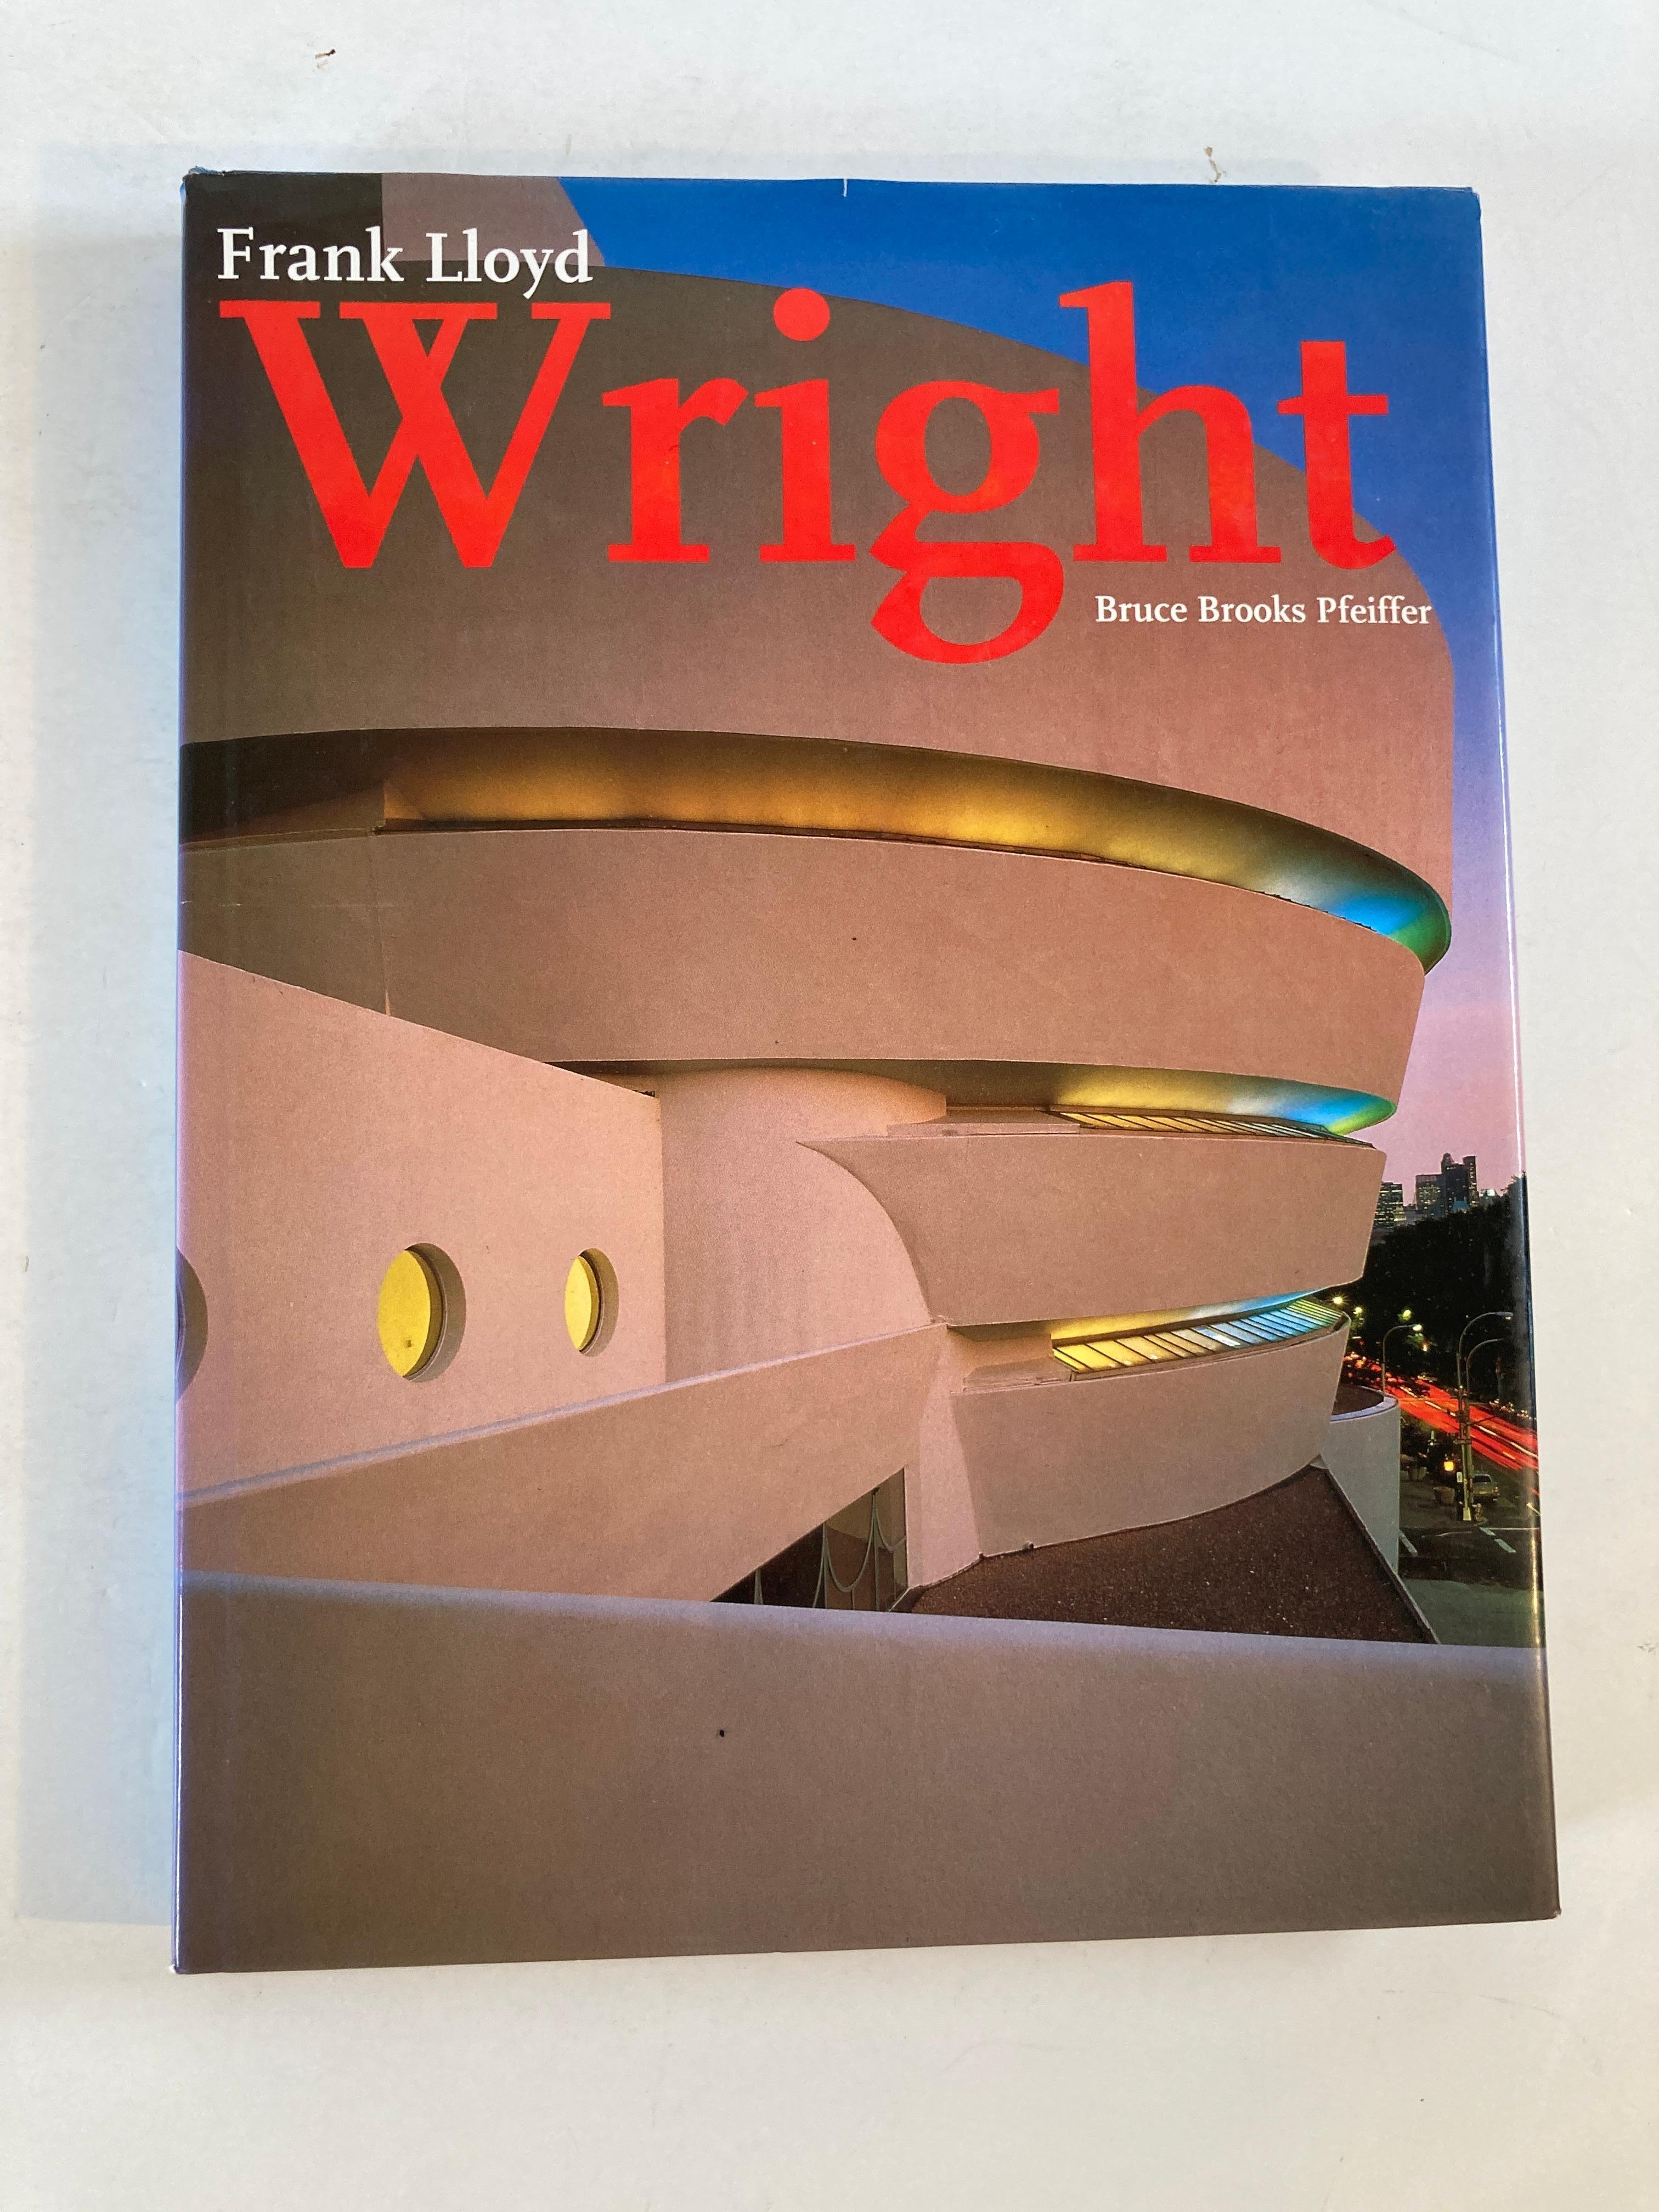 Frank Lloyd Wright von Bruce-Brooks-Pfeiffer. Gebundenes Buch.
Veröffentlicht von Barnes Noble Books (1994).
Ein Gebäude von Frank Lloyd Wright (1867-1959) ist gleichzeitig unverwechselbar individuell und erinnert an eine ganze Epoche. Wrights